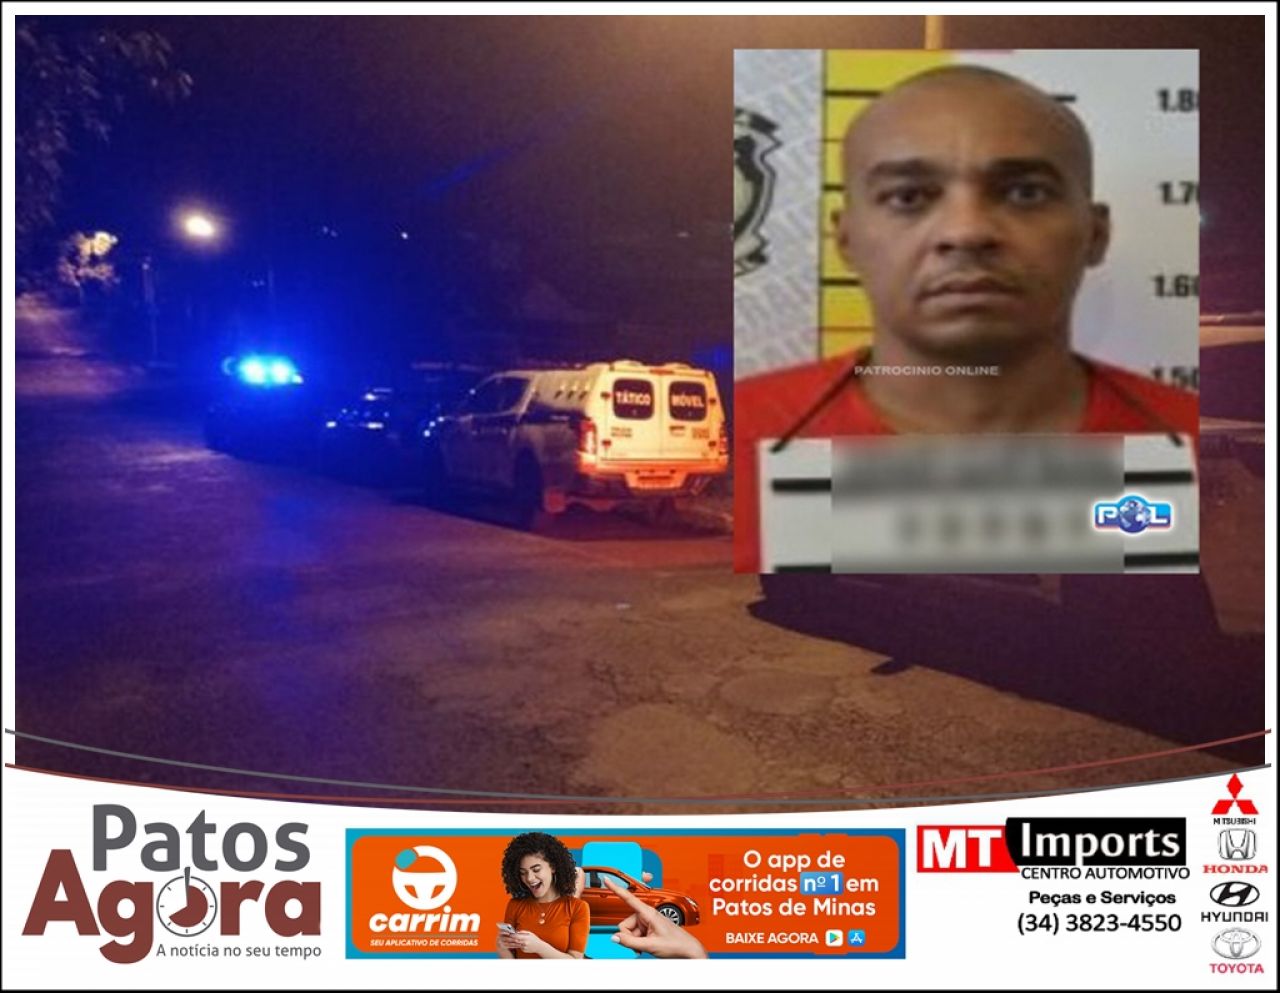 Patrocínio: homens usando fardas semelhantes da PM matam ex-chefe do tráfico de Belo Horizonte